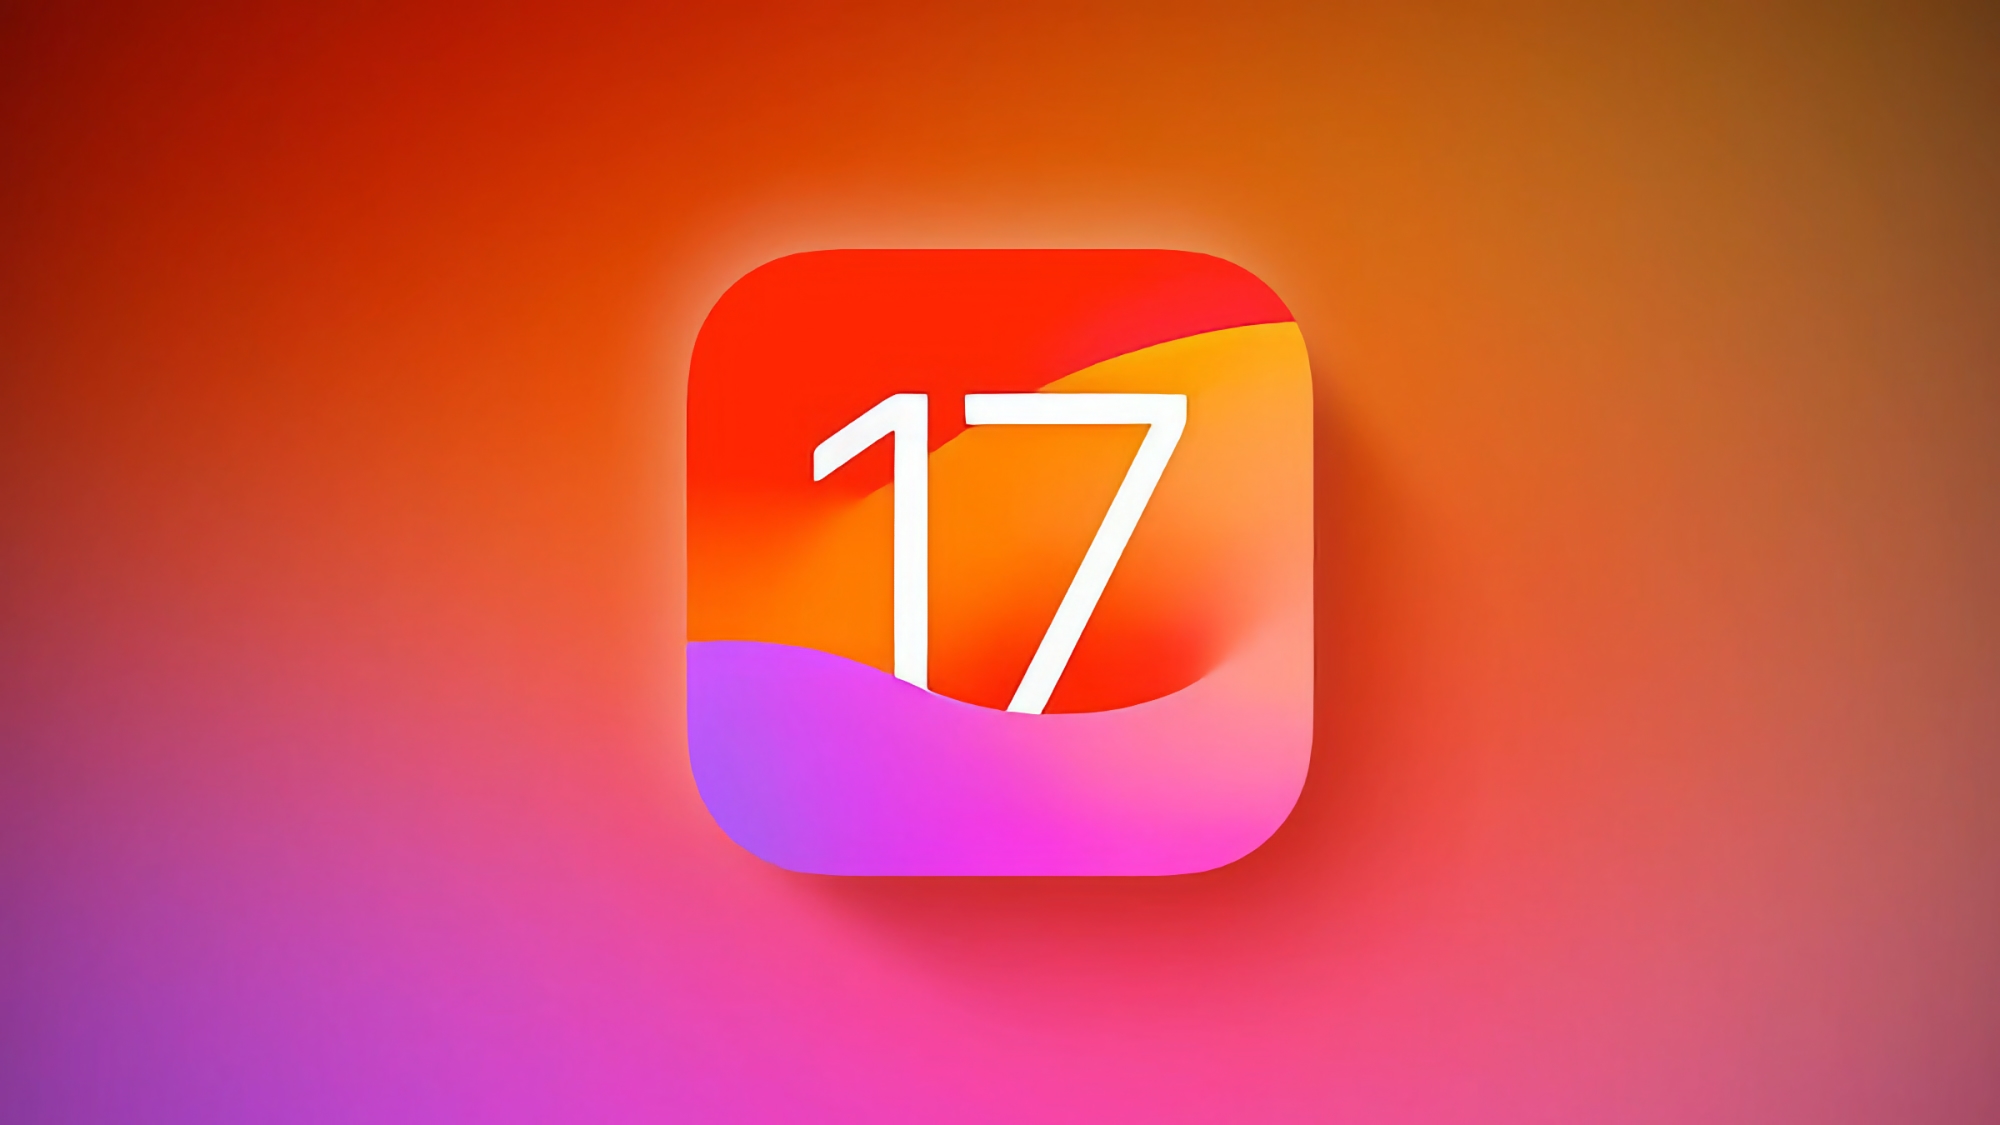 Hva er nytt i iOS 17 Beta 4?